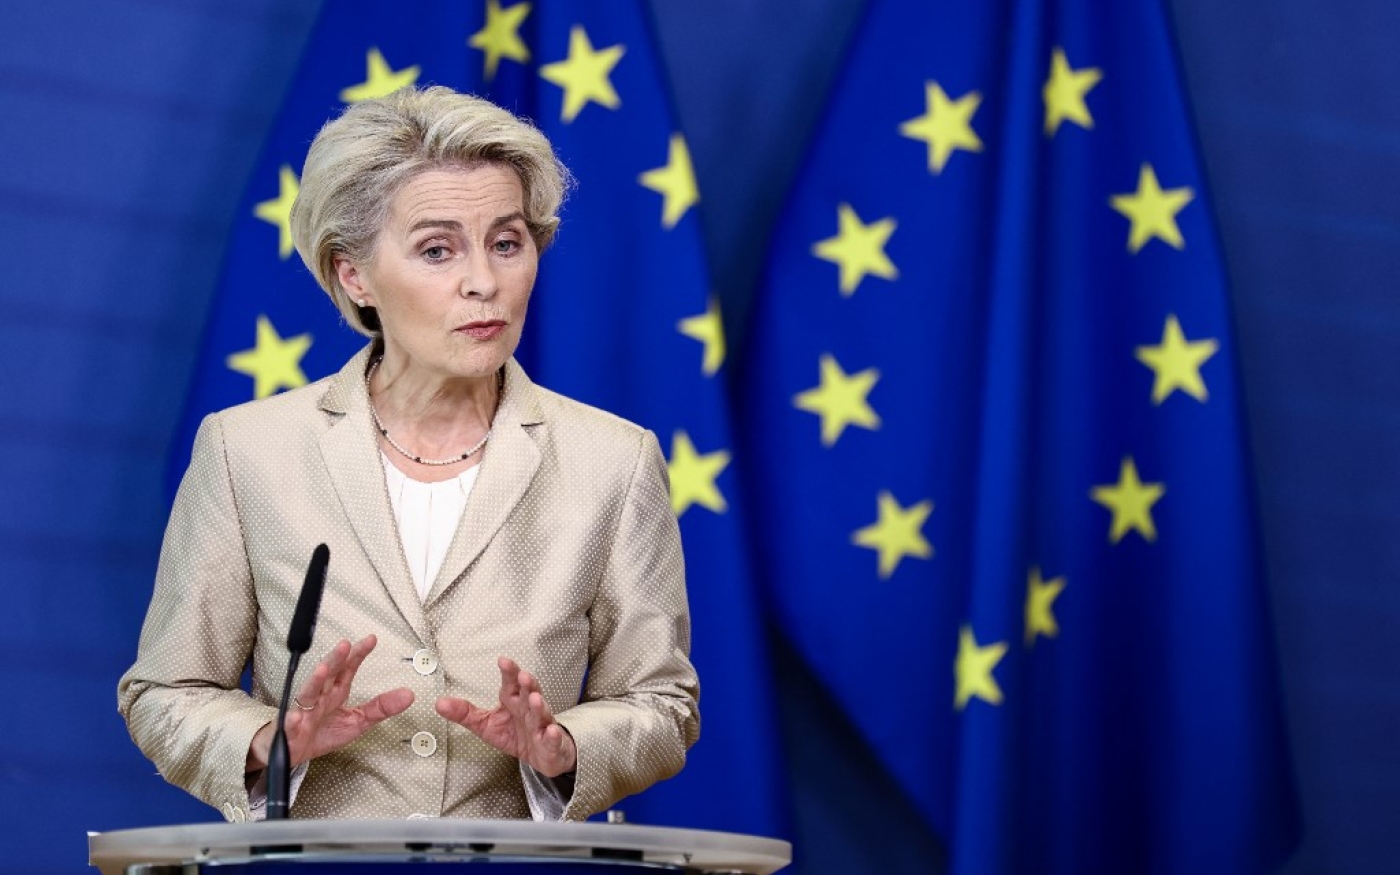 La présidente de la Commission européenne Ursula von der Leyen s’exprime à Bruxelles, le 28 septembre 2022 (AFP)